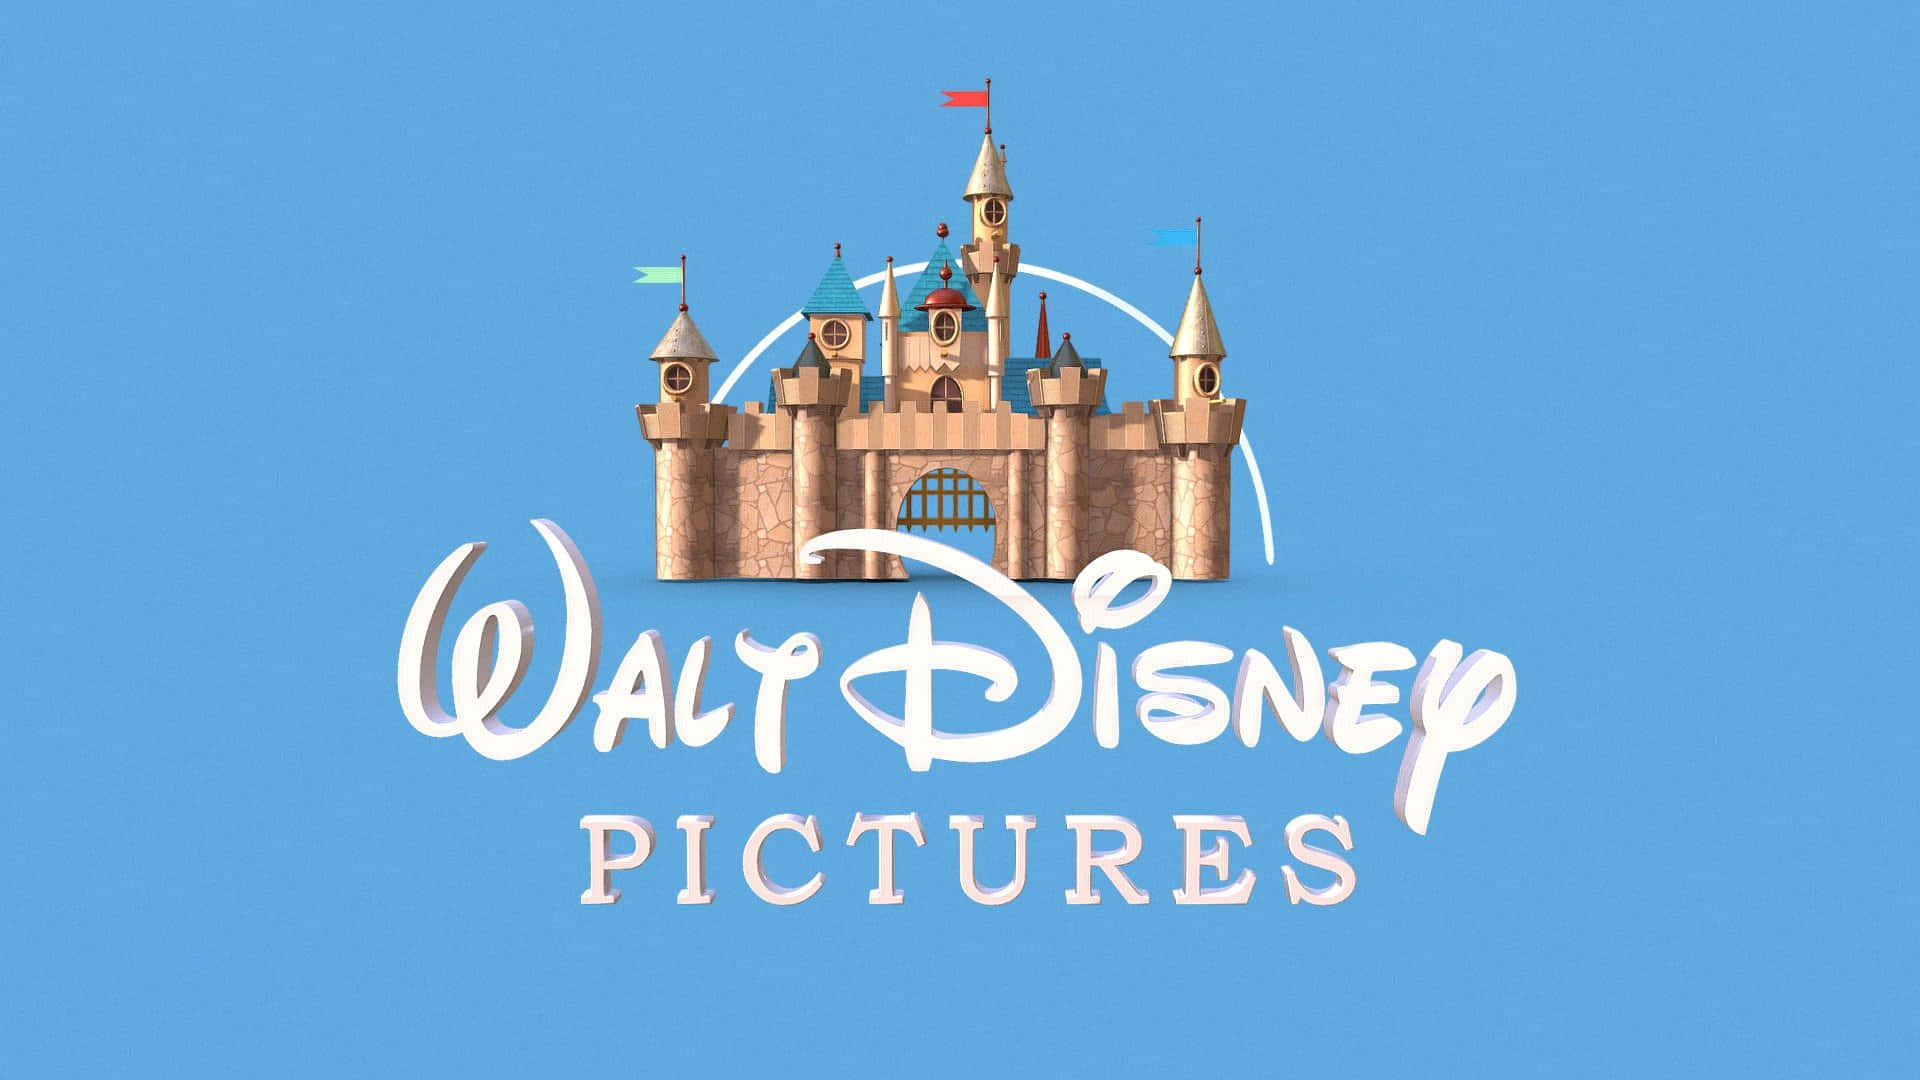 Walt Disney Picture Logo Tapet: En flydende sekvens af Walt Disney billeder.